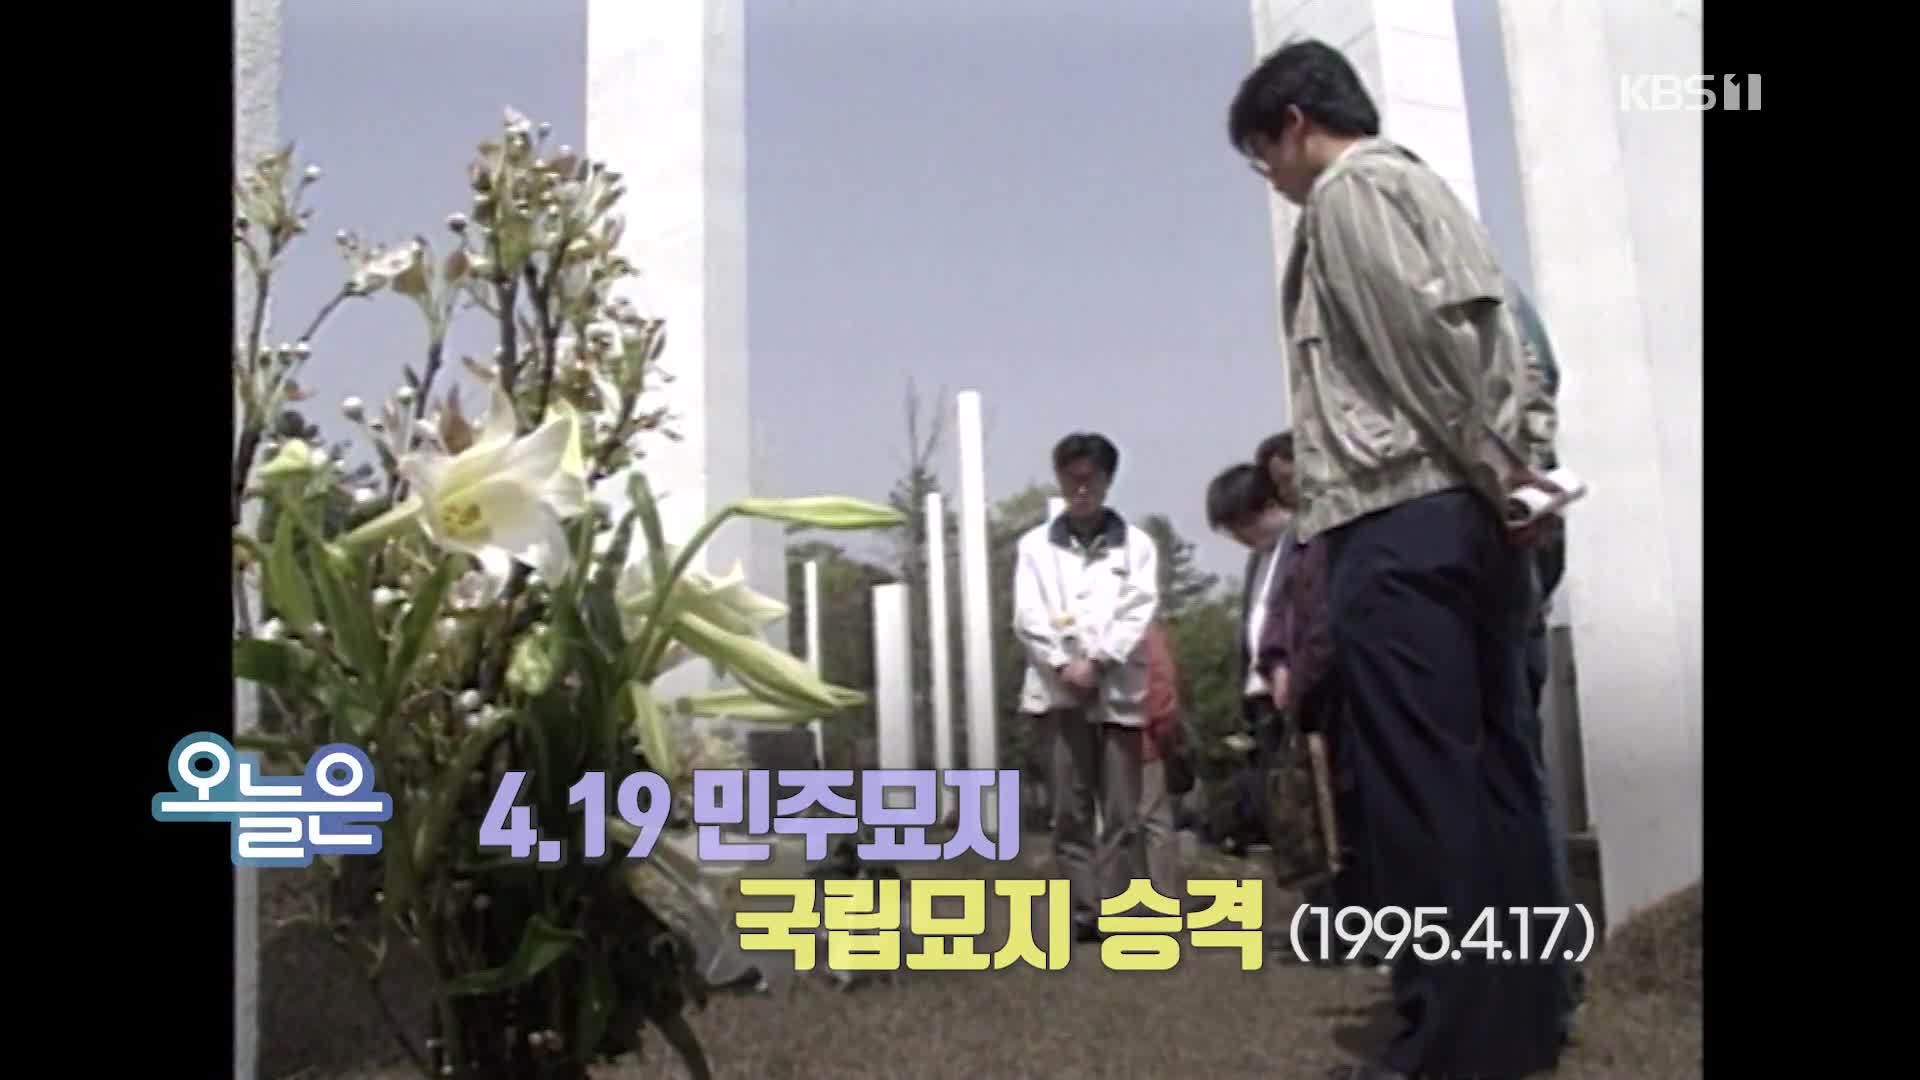 [오늘은] 4.19 민주묘지 국립묘지 승격 (1995.4.17.)